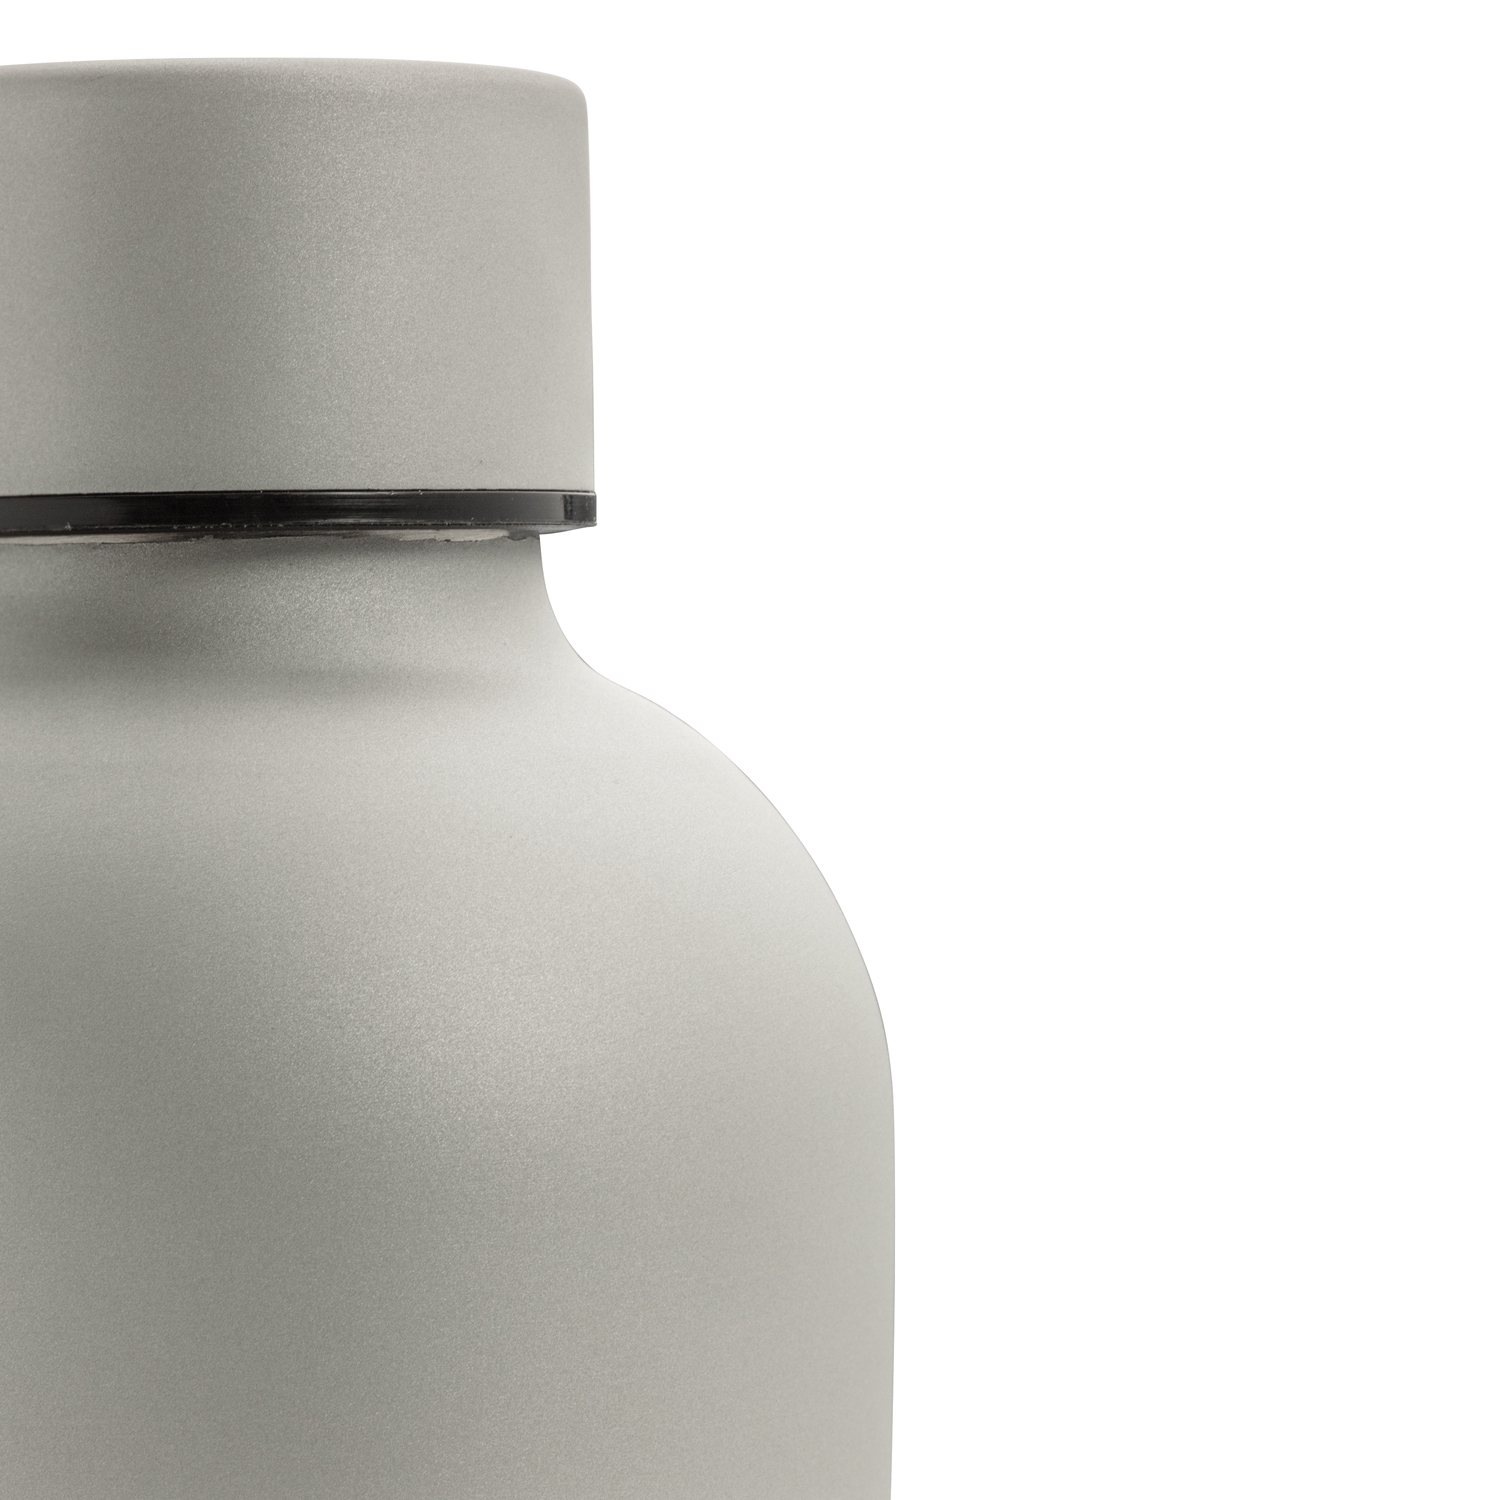 Вакуумная бутылка Impact с двойными стенками из нержавеющей стали, серебристый, нержавеющая сталь